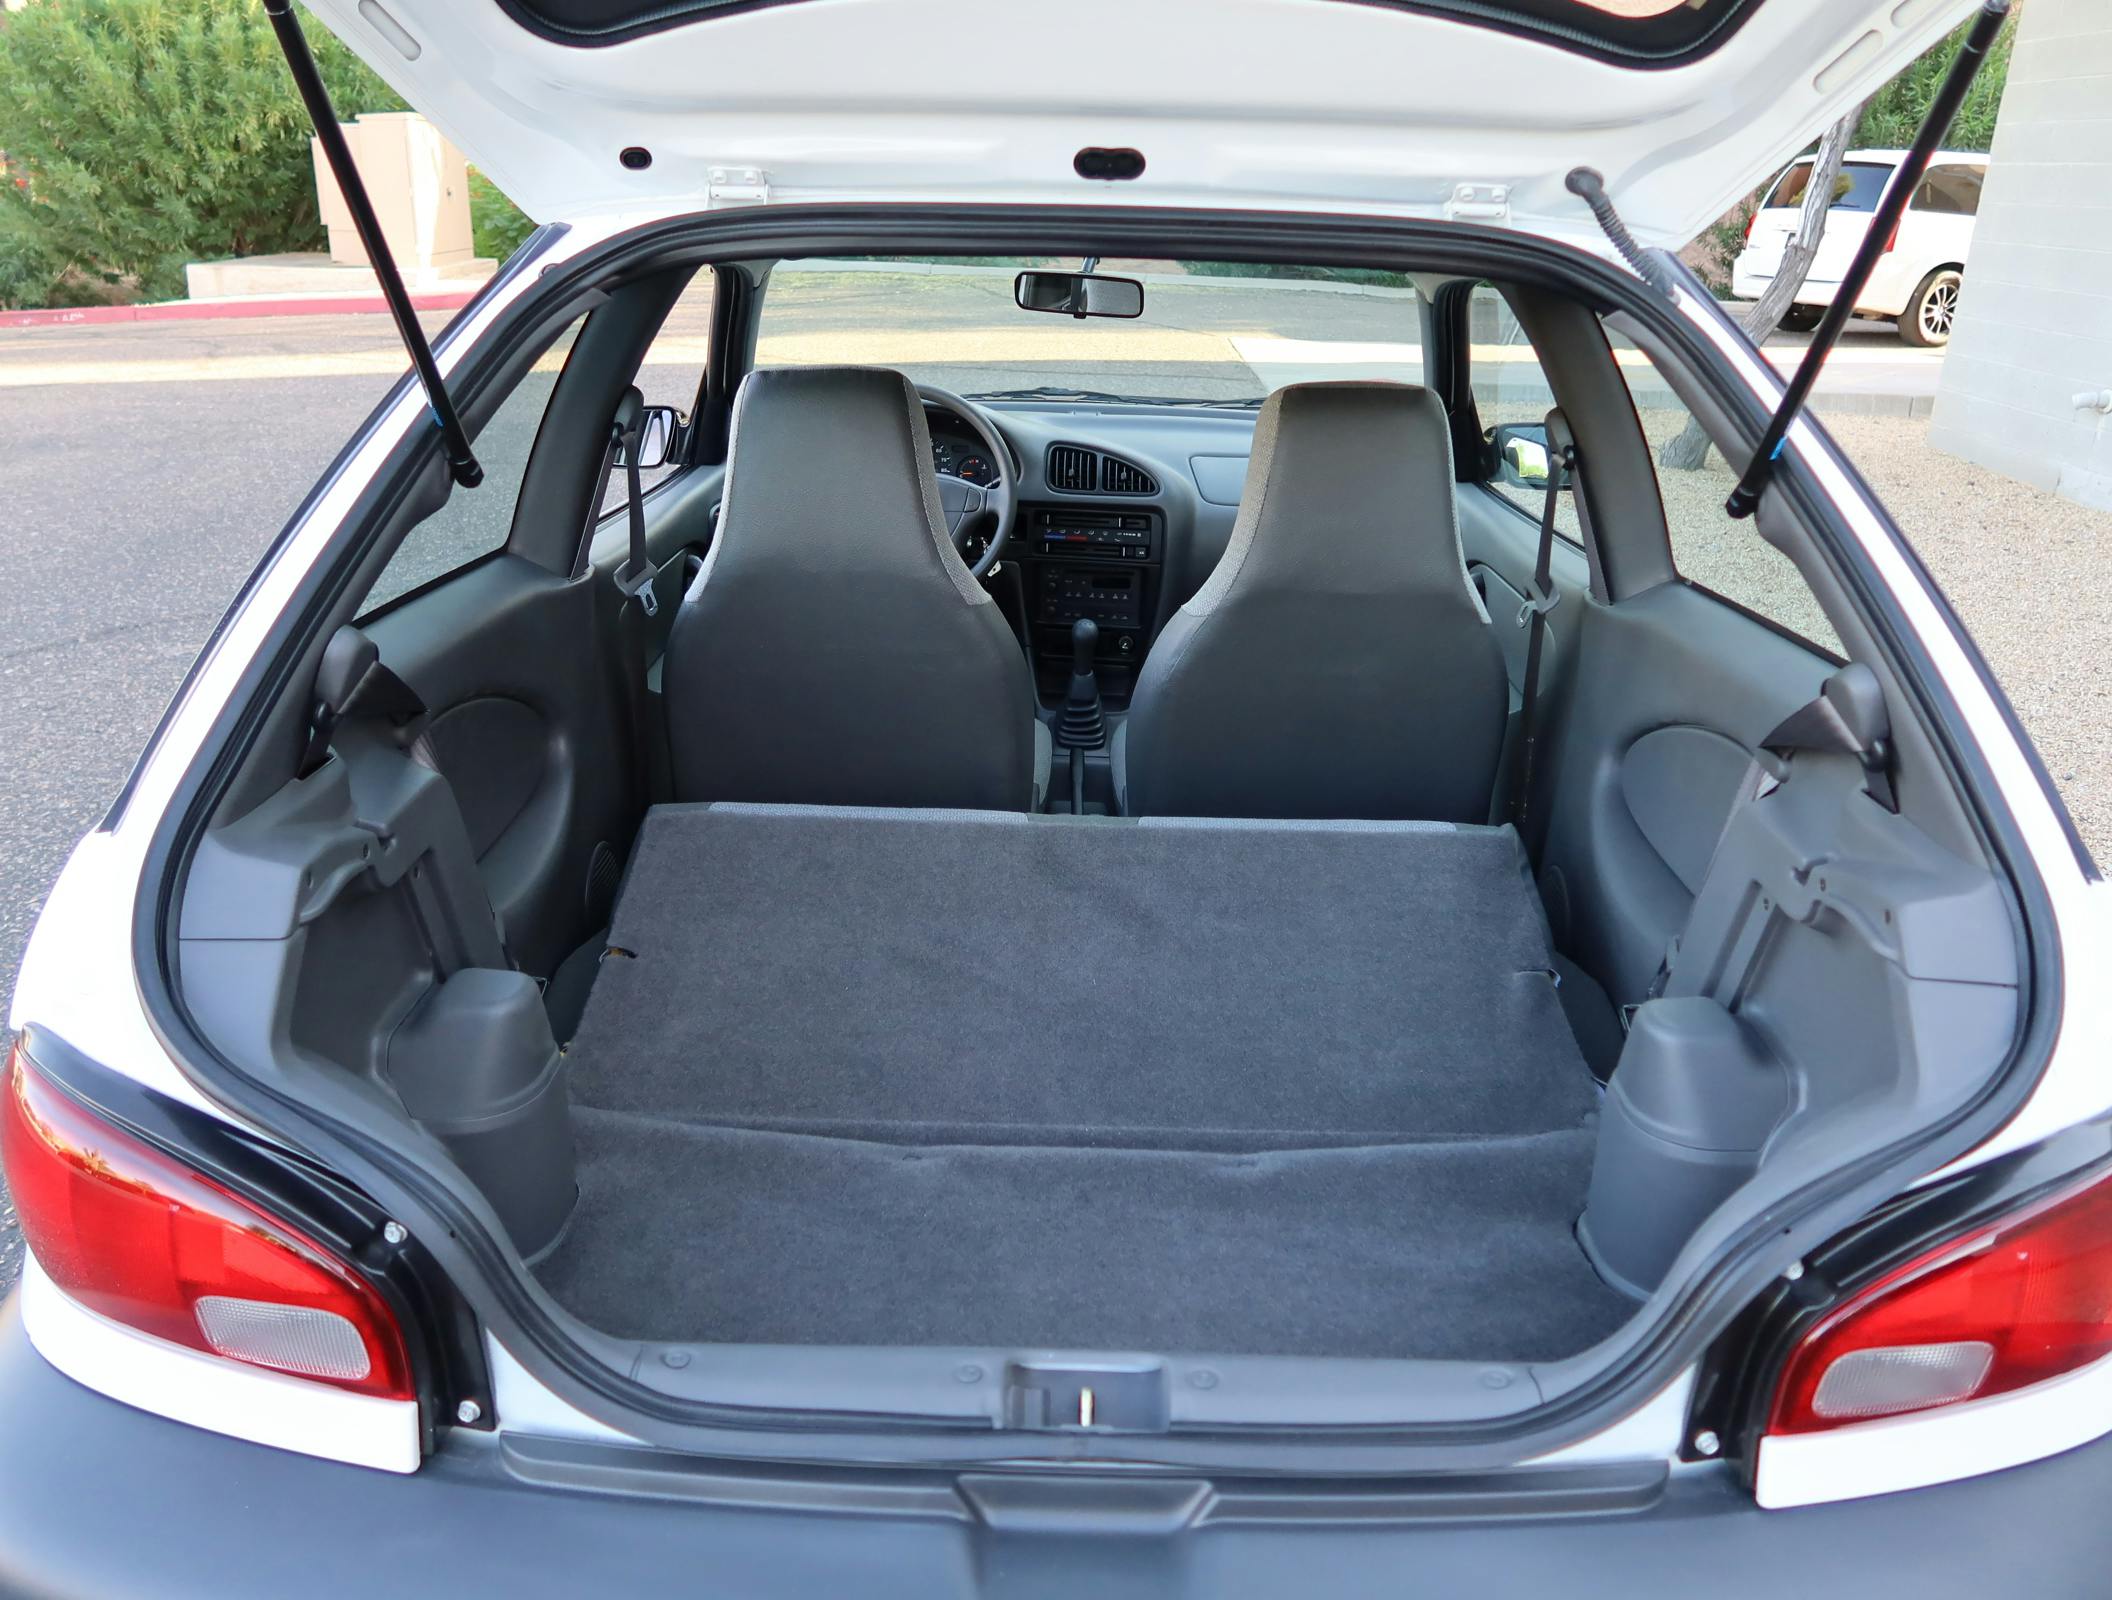 2000 Chevrolet Metro Coupe 5-Speed interior cargo room